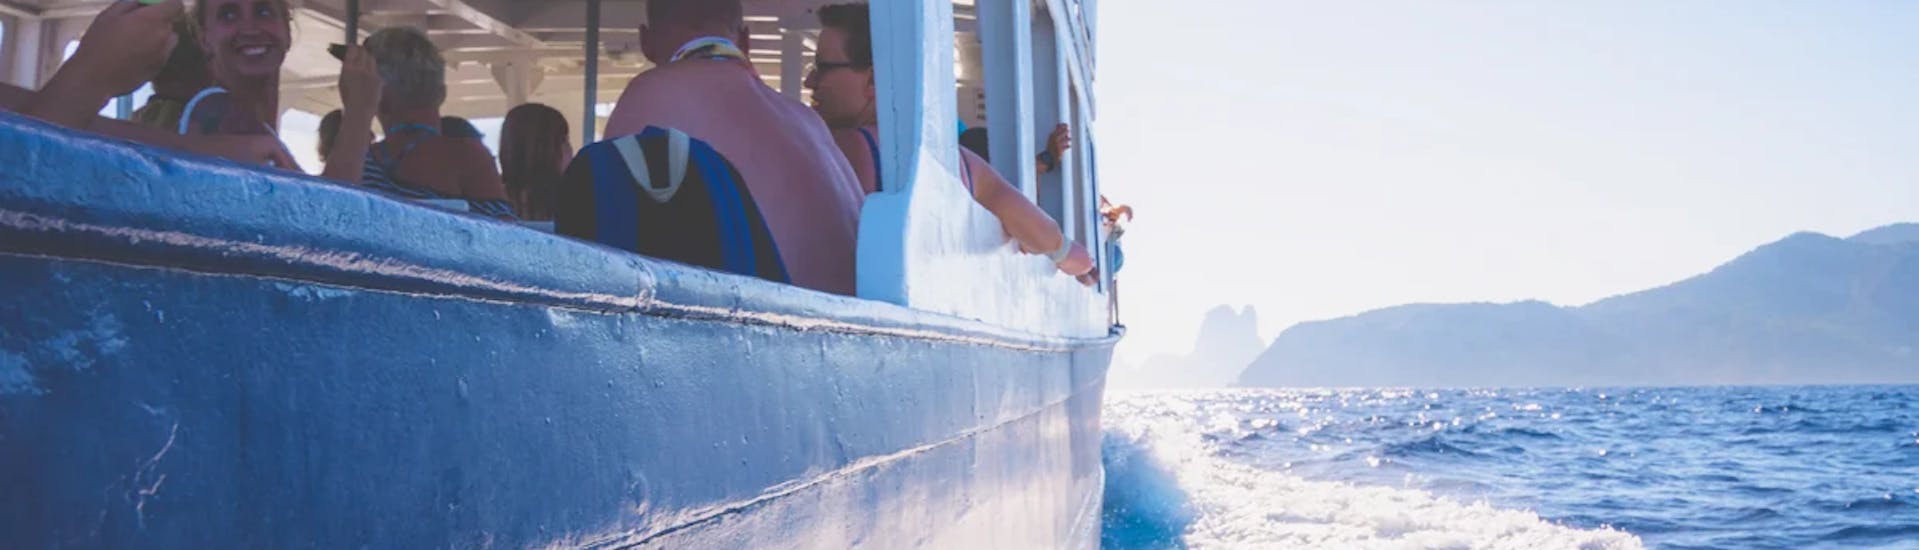 Balade en bateau La Savina (Formentera) - Platja d'en Bossa  & Visites touristiques.